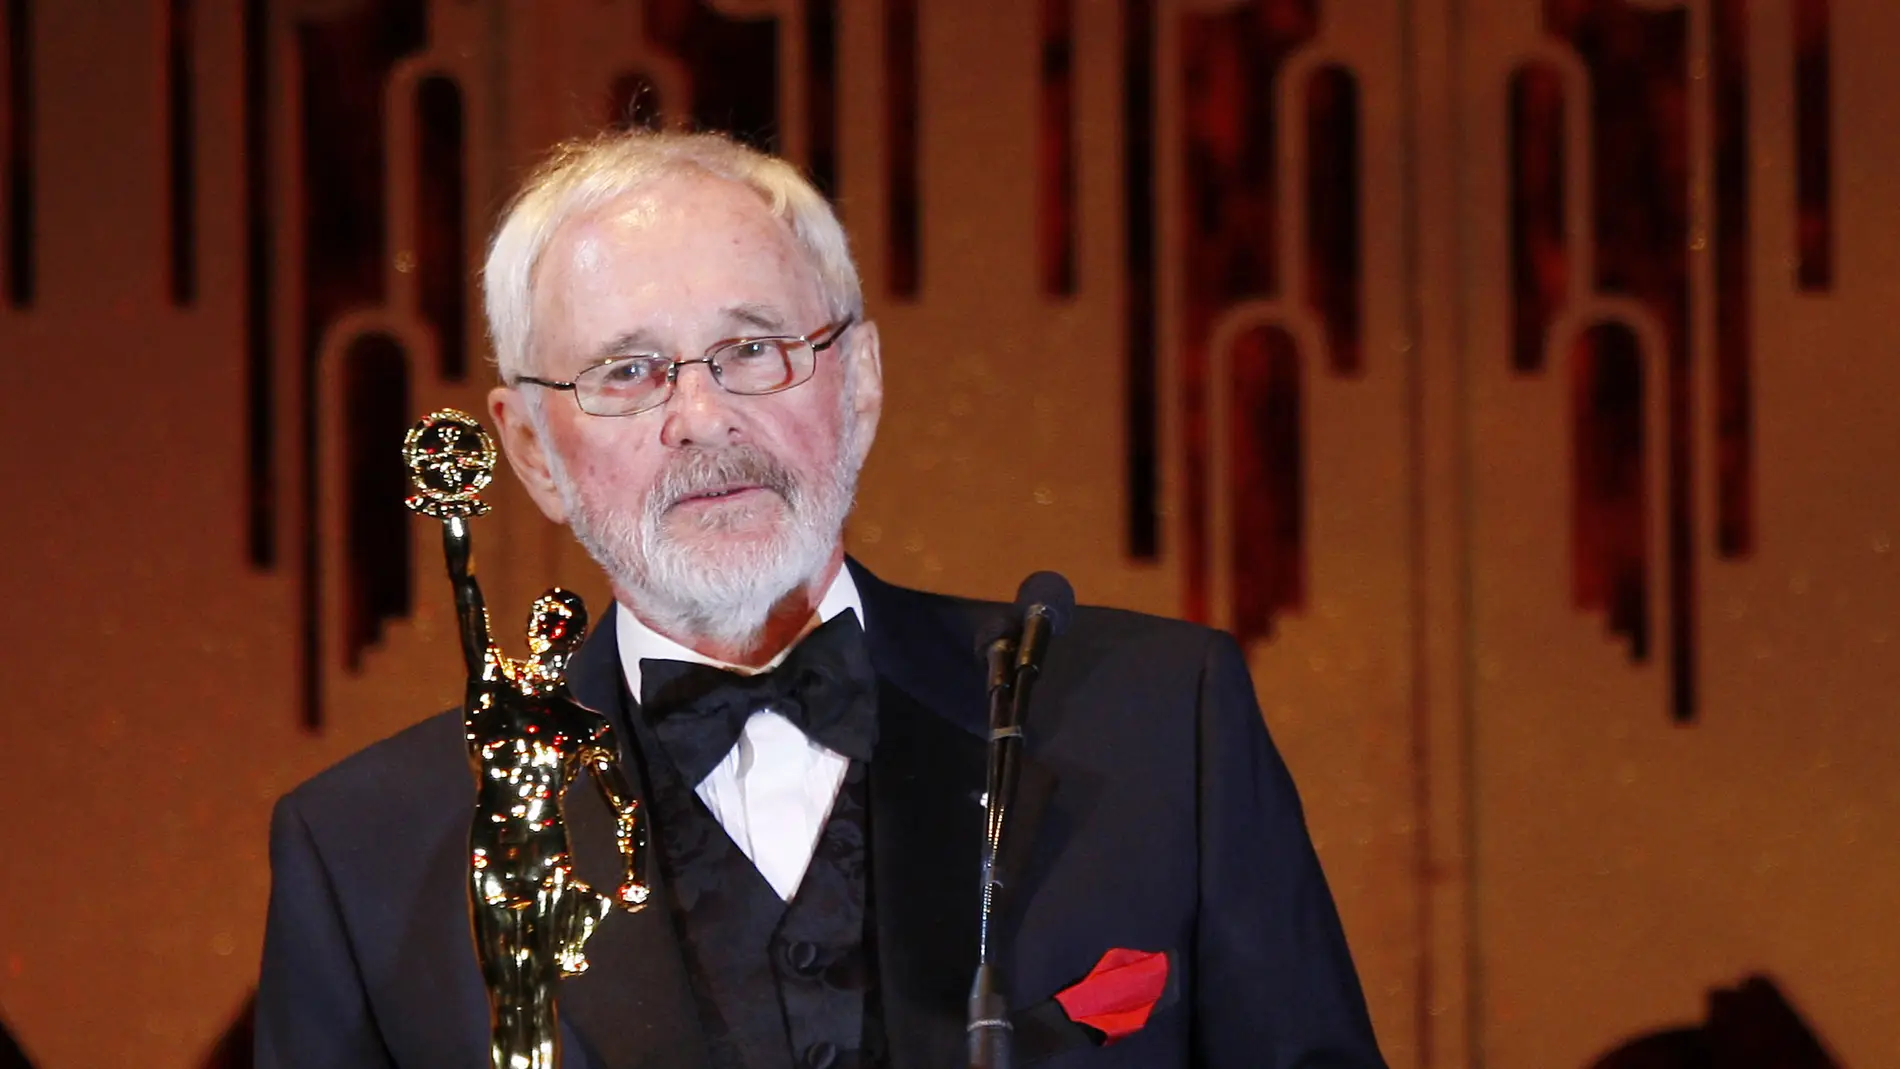 El director Norman Jewison recibiendo el Golden Eddie